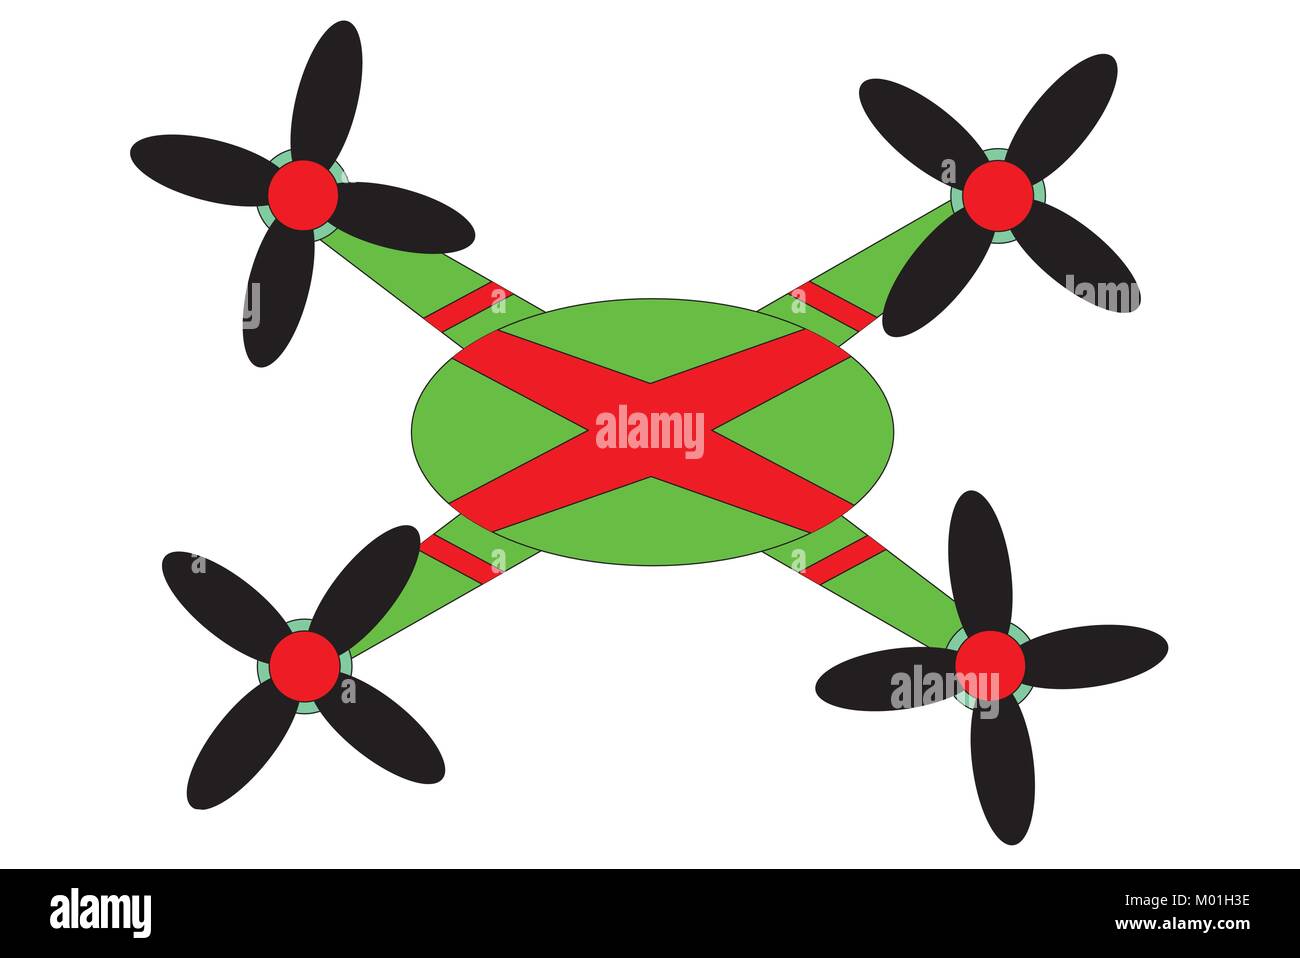 Abbildung: Drone mit vier Propellern, Vektor der quadcopter / Der fliegbar Objekt/nicht-militärischen Drone/Hobby drone/Drone, schematische Darstellung auf Drone Stock Vektor